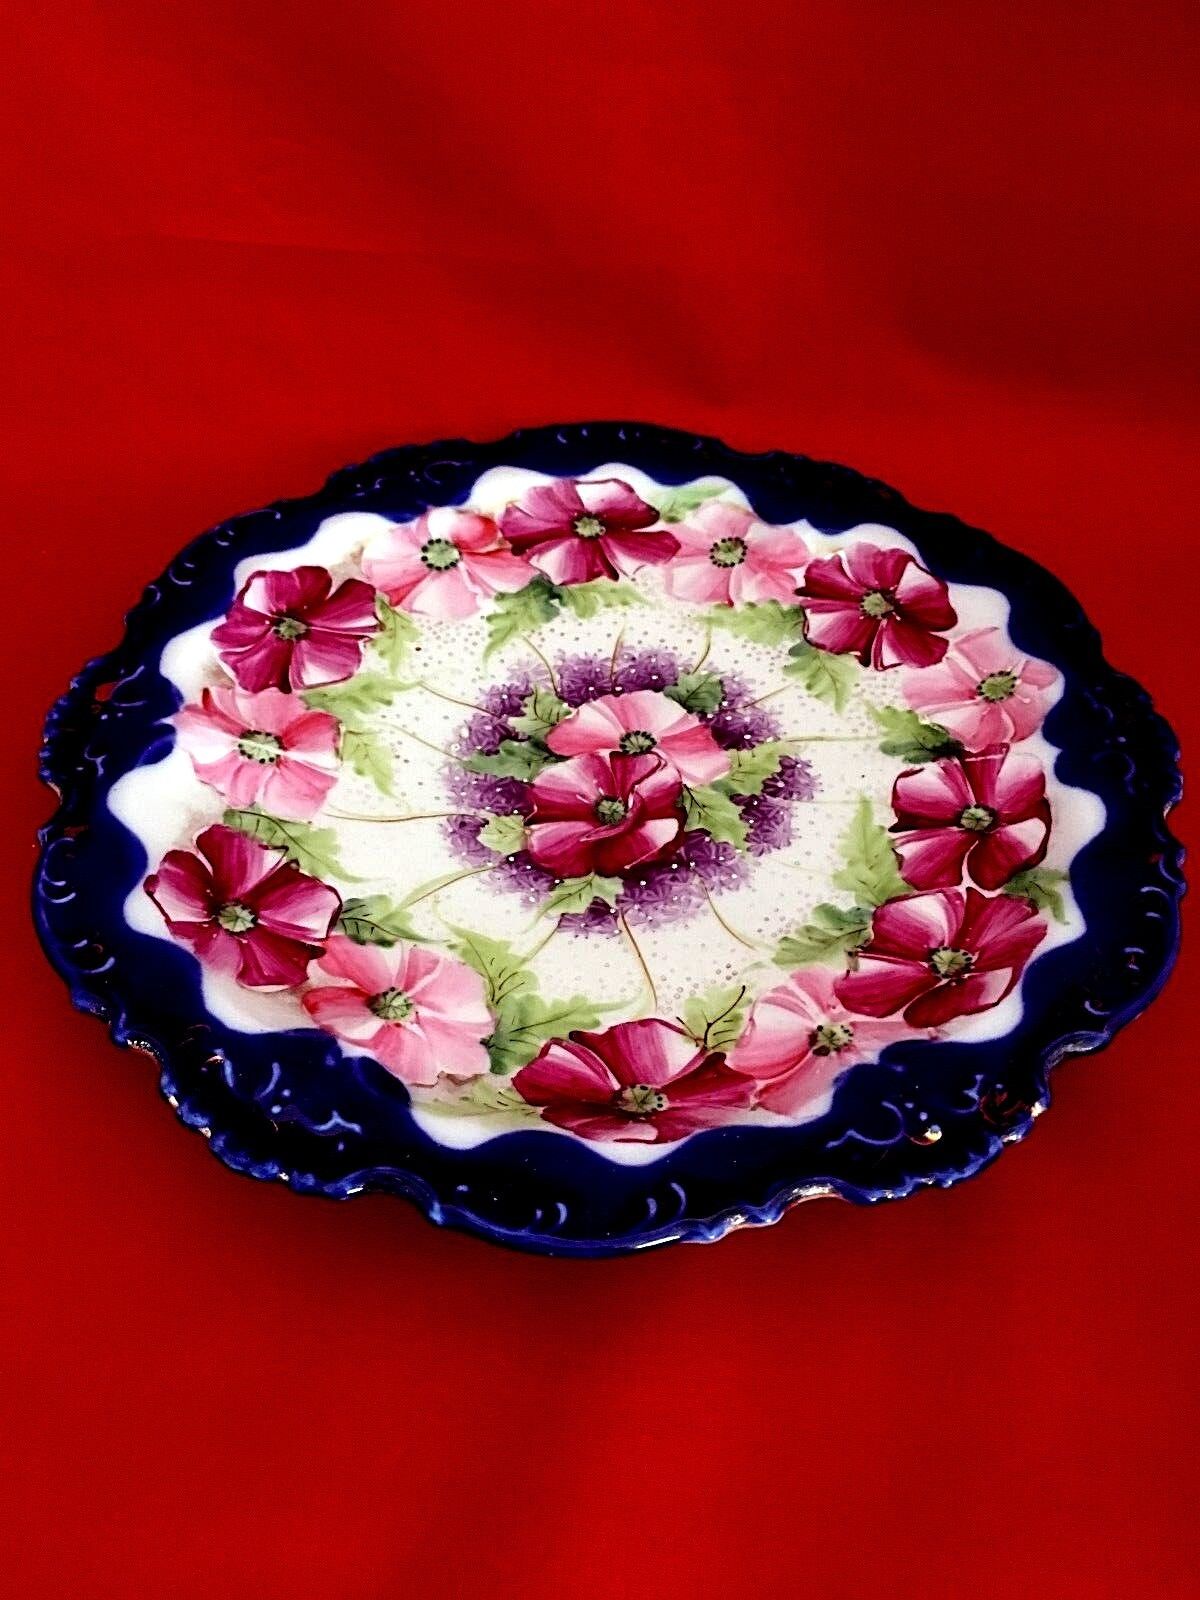 Antique Nippon Bowl Lidded with under plate cobalt edged floral violets design Без бренда - фотография #2